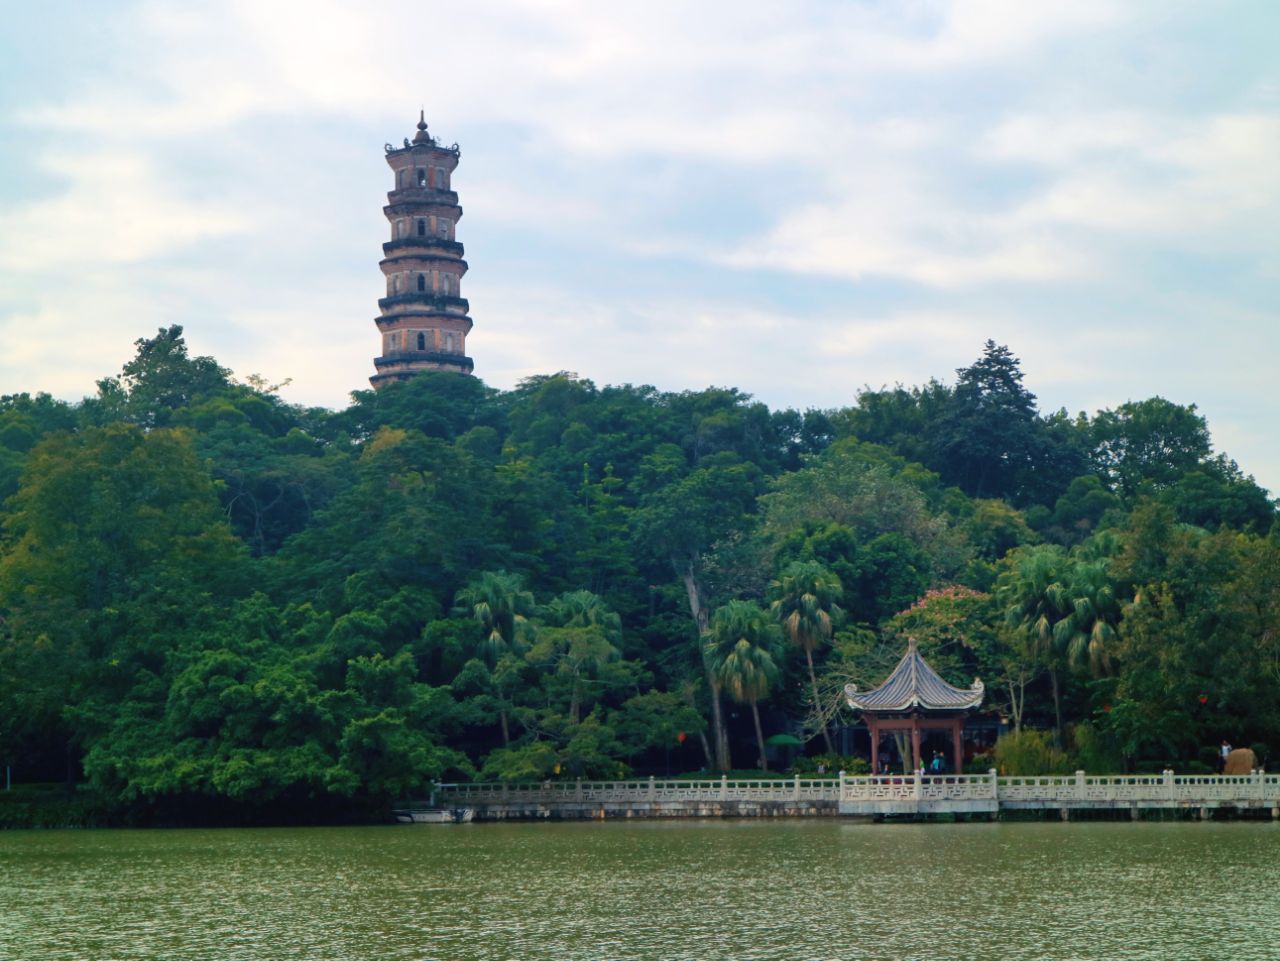 惠州西湖美景怎么画图片